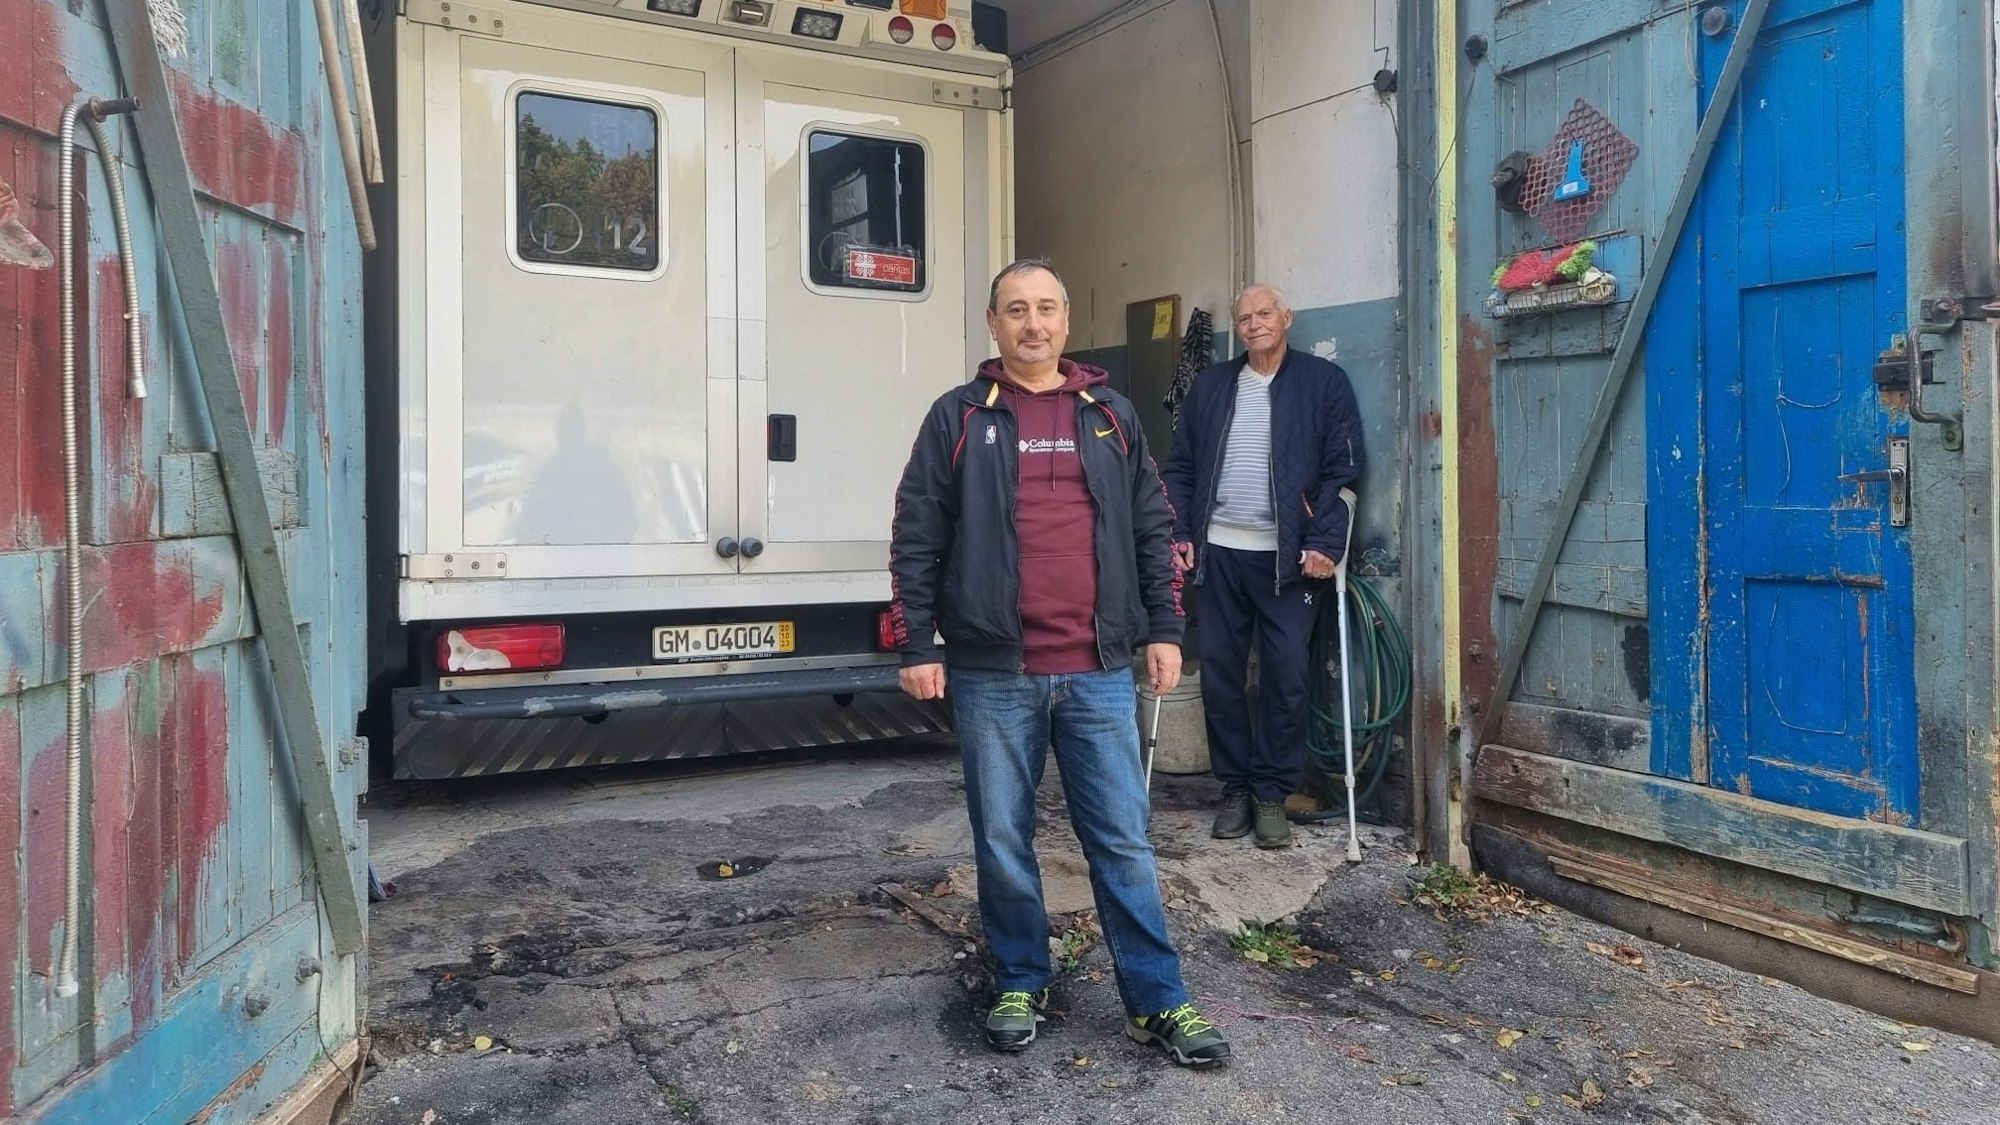 Igor Prudkov steht neben einem alten Krankenwagen. Hinter ihm steht ein Mann mit Gehhilfen.